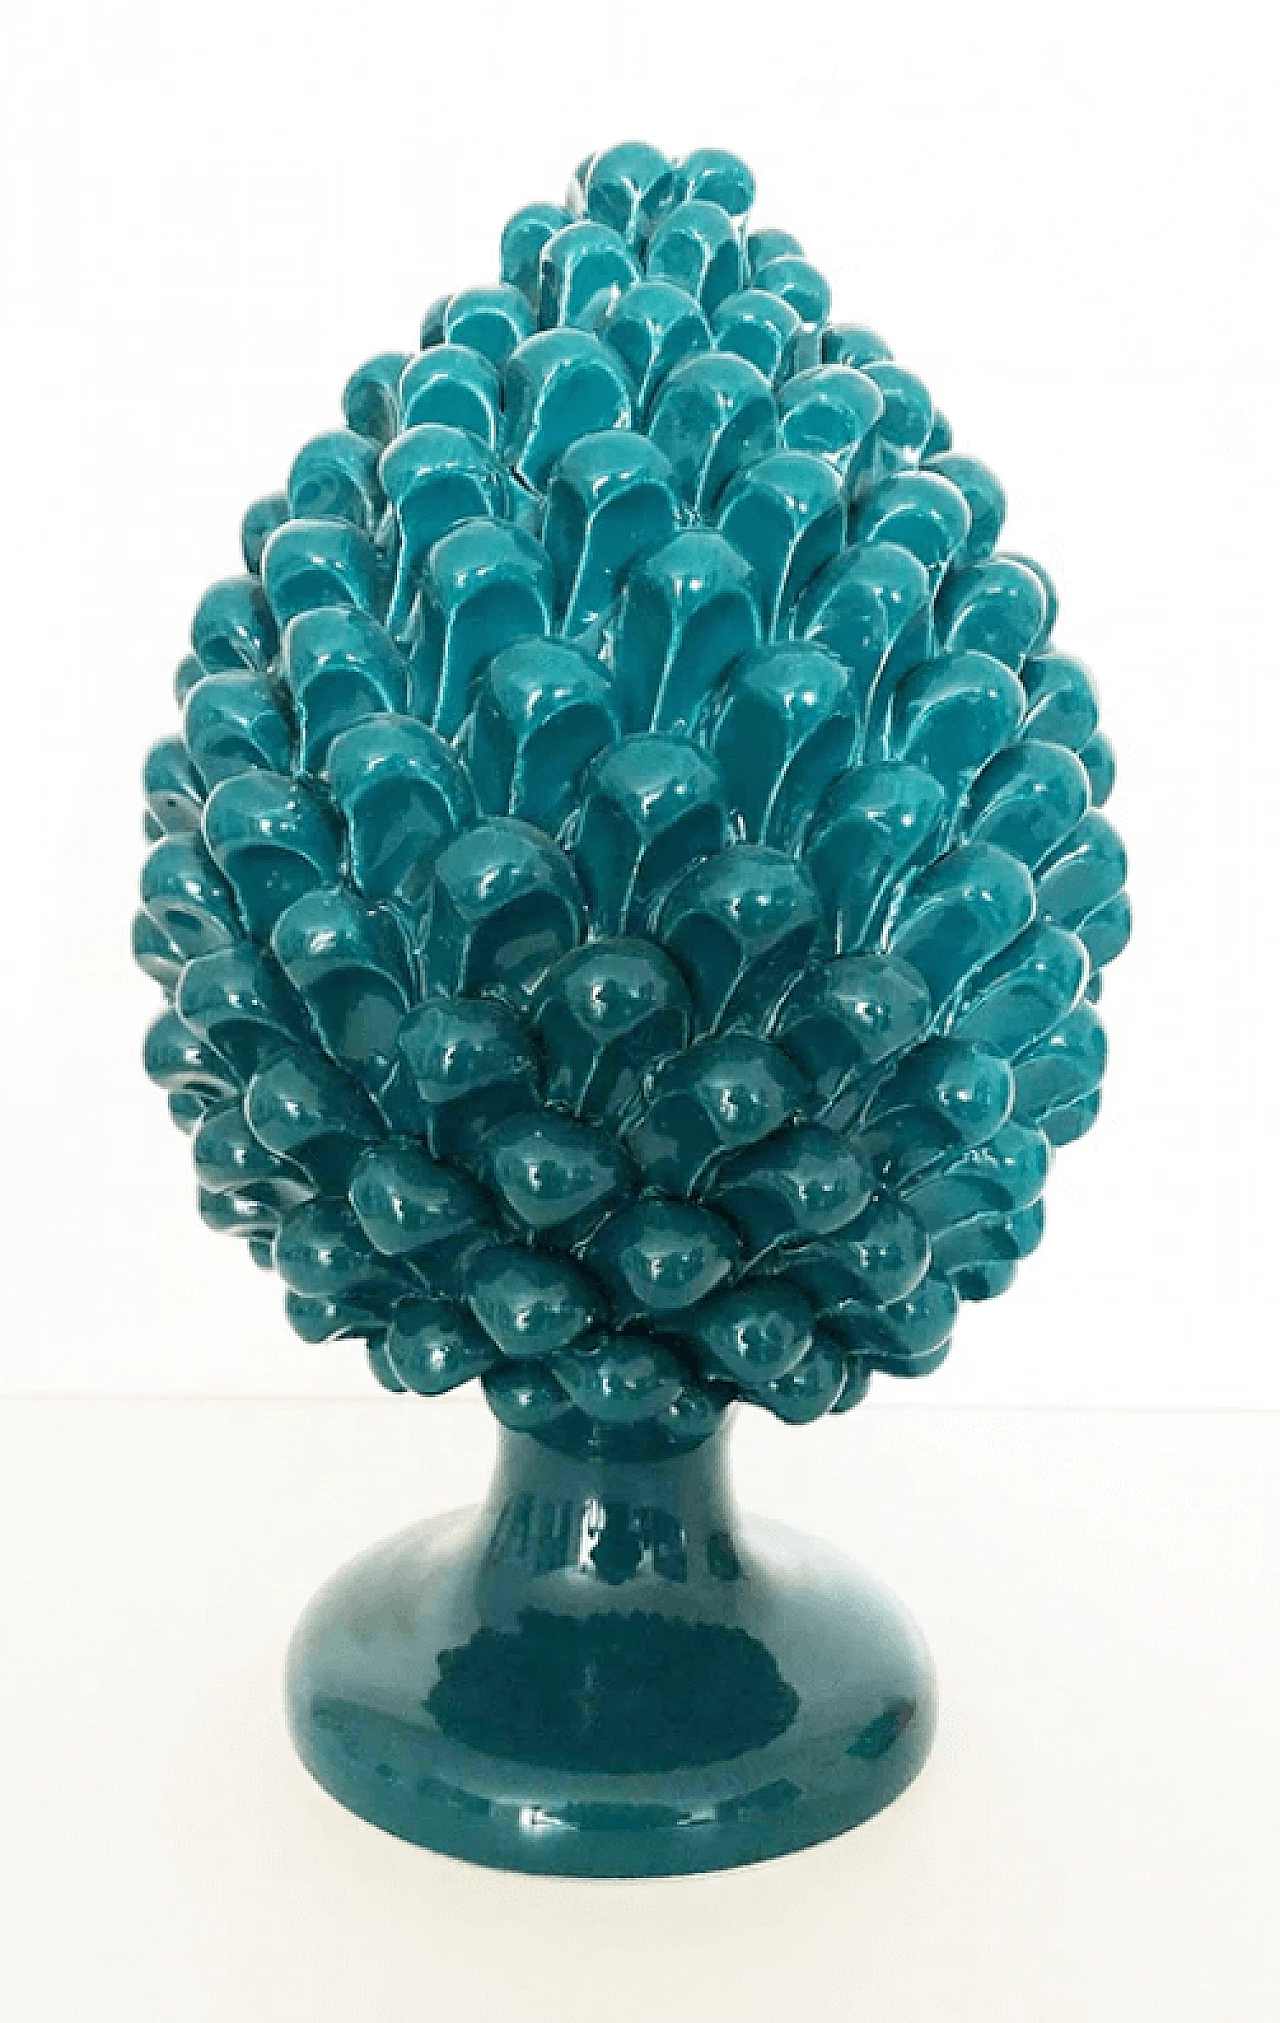 Caltagirone ceramic octanium decorative pinecone 1